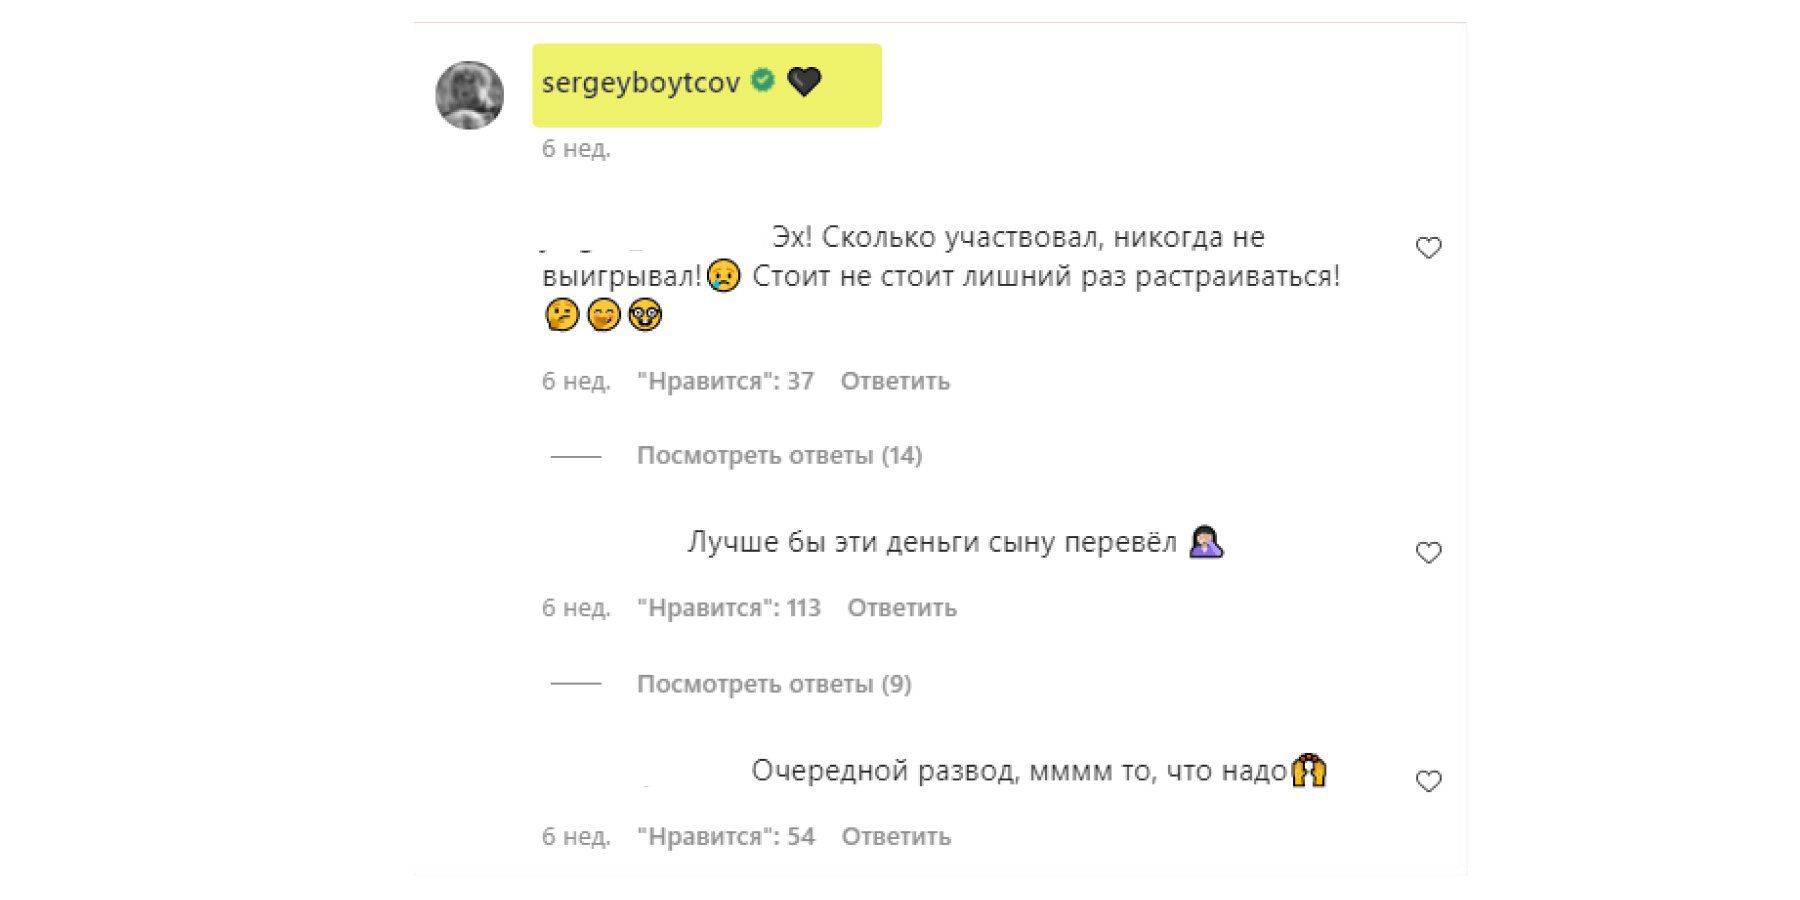 Сергей запускал розыгрыш и после завершения удалил текст описания, но комментарии остались